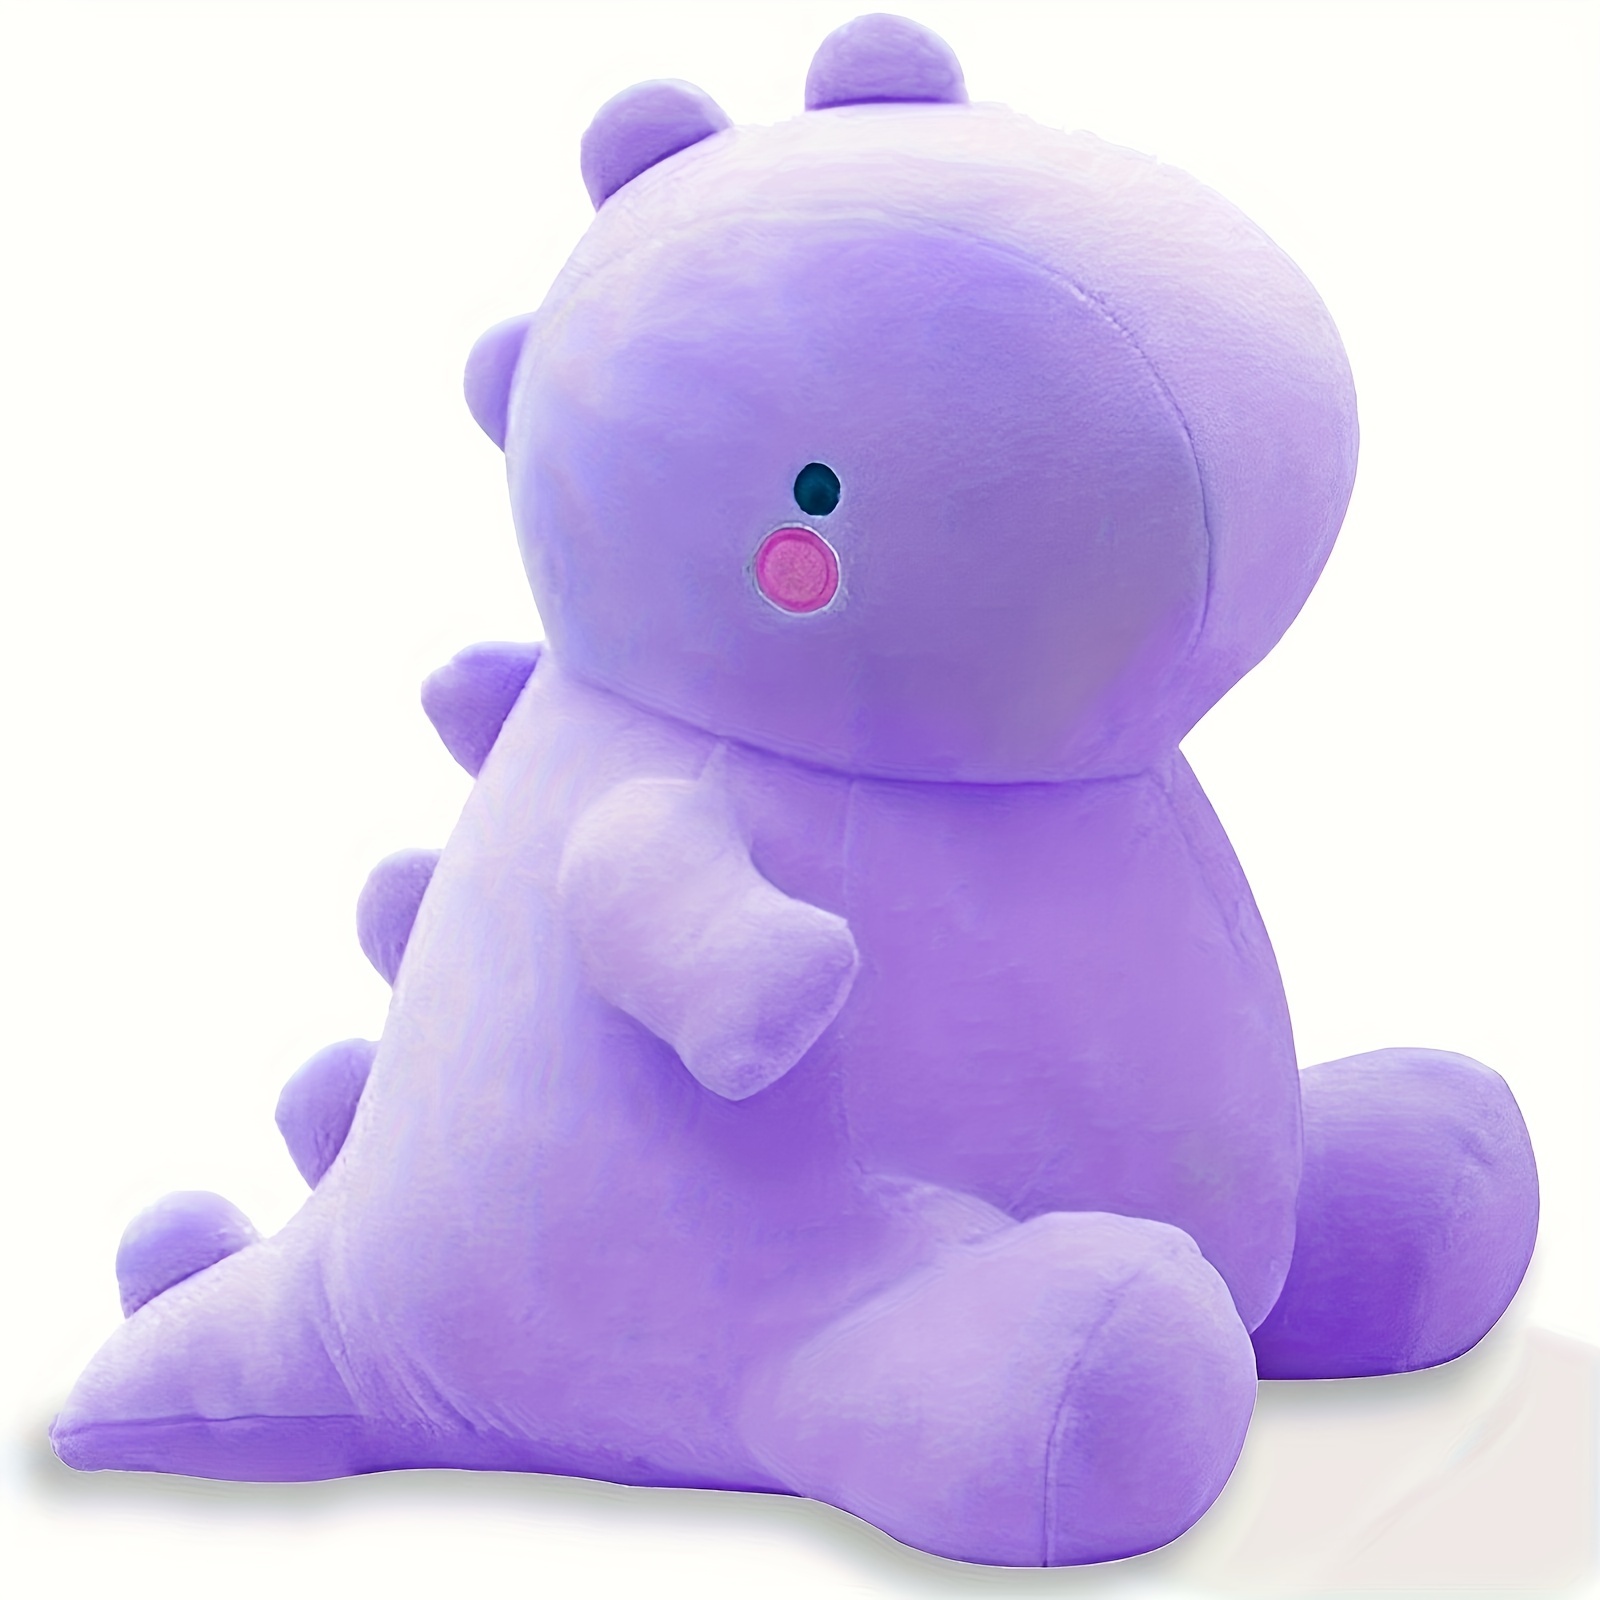 Stitch Plush Toys, 11.8 inch Purple Lilo & Stitch Stuffed Dolls, Purple  Stitch Gifts, Soft and Huggable, Stuffed Pillow Buddy, Stitch Gifts for  Fans 